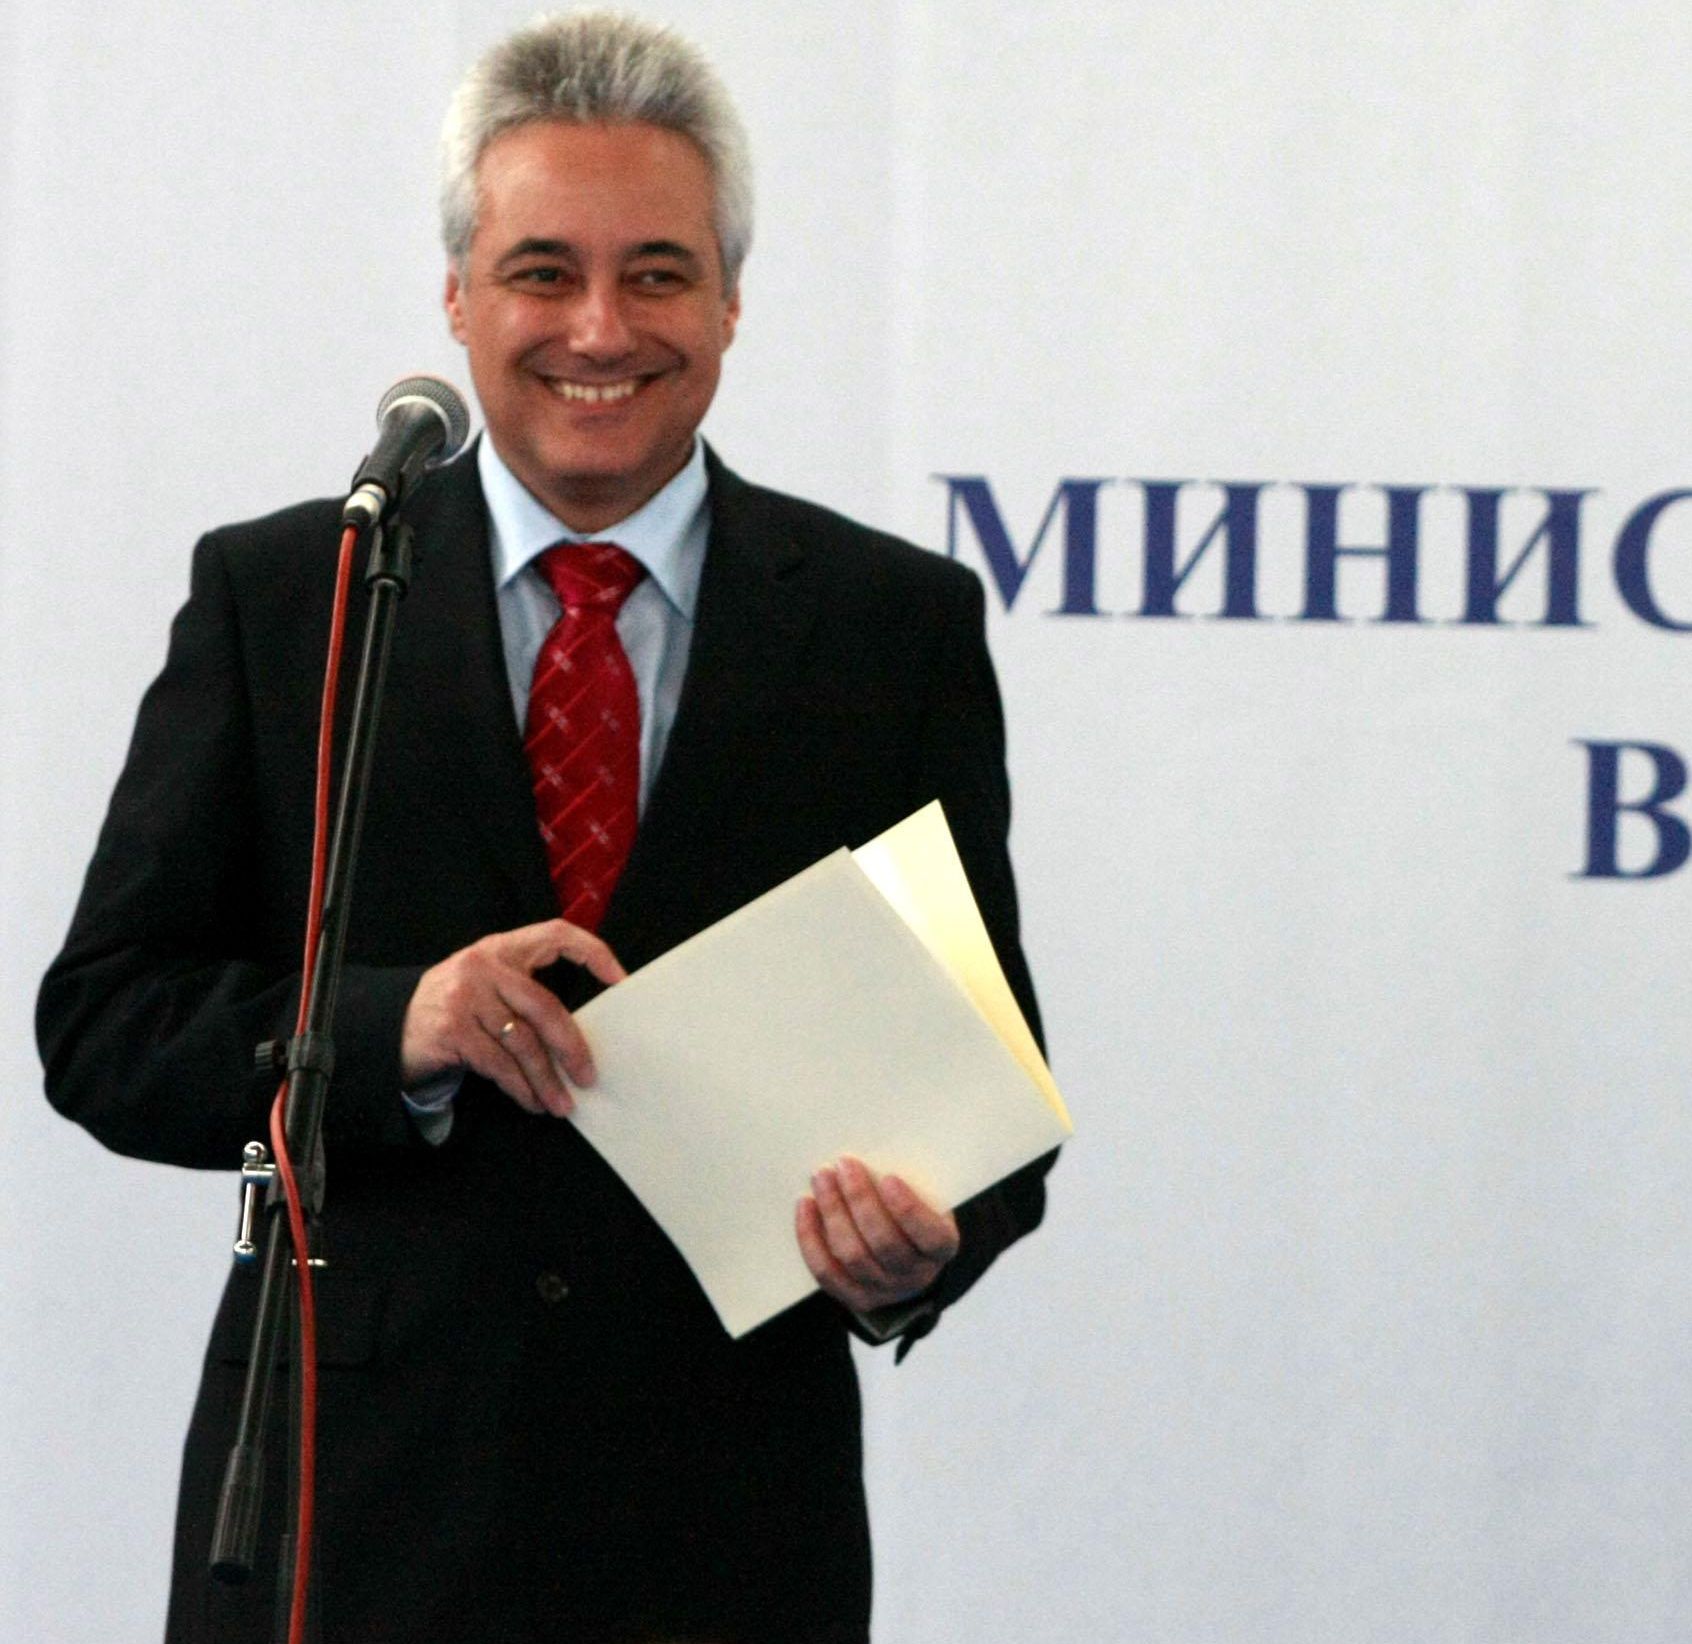 7 хил. лв. държавни пари е изхарчил Марин Райков за път и подаръци